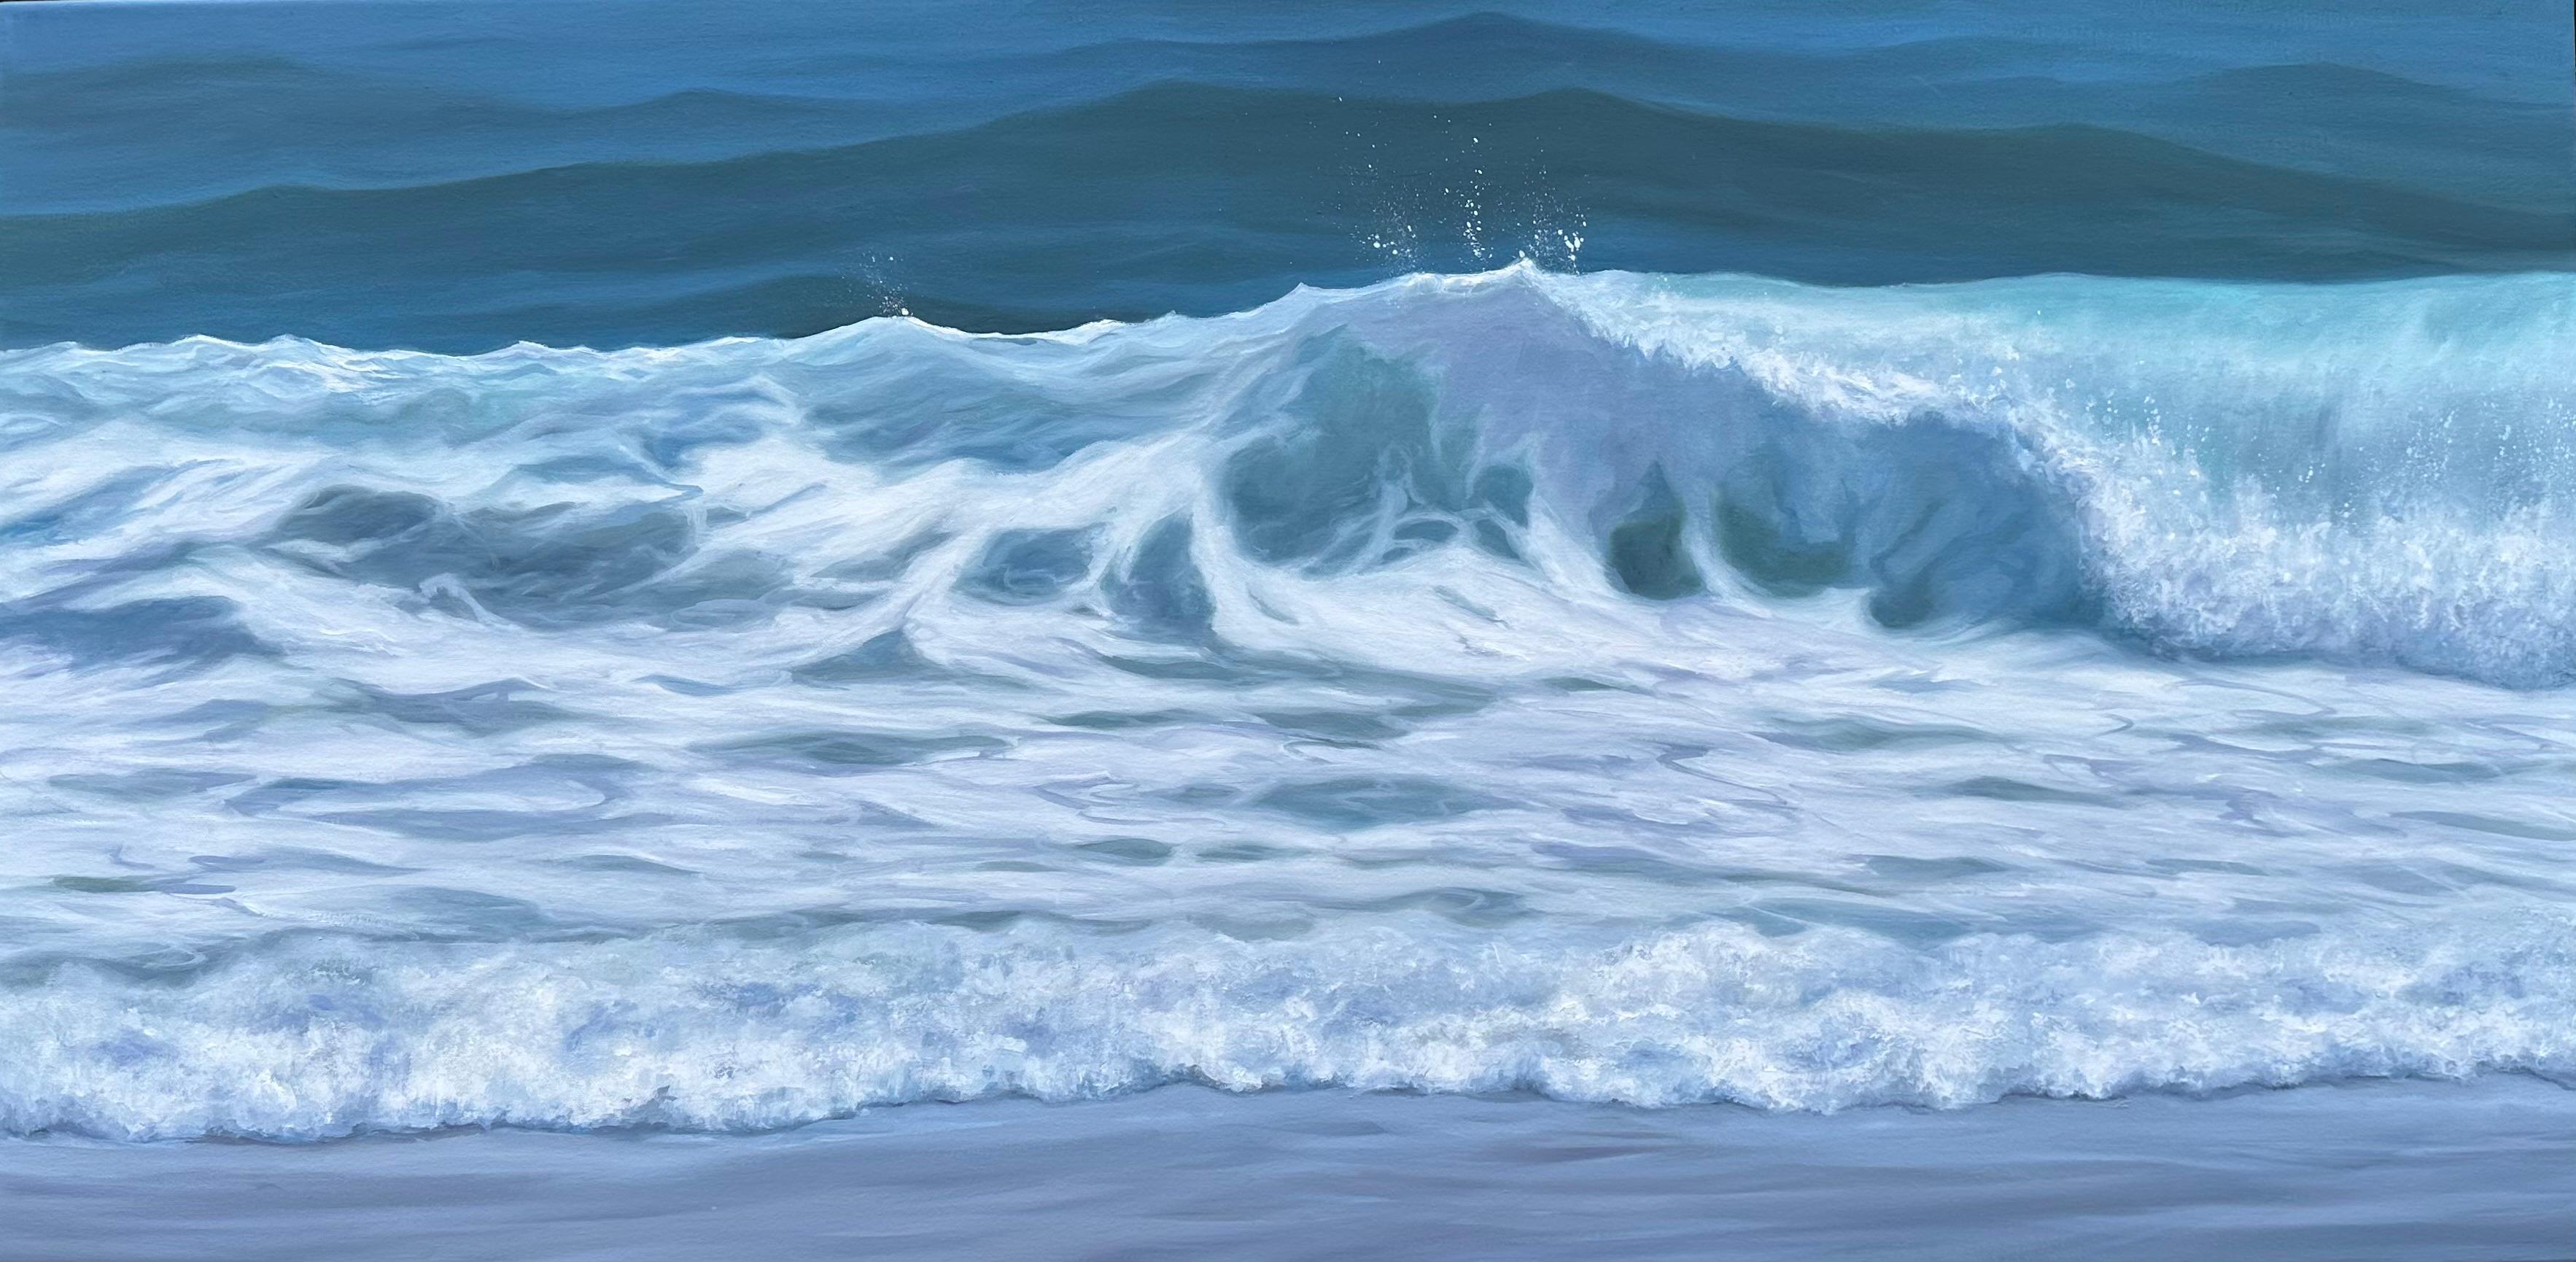 Whitney Knapp Landscape Painting - "Ocean's Edge", a landscape oil painting featuring a calm shoreline